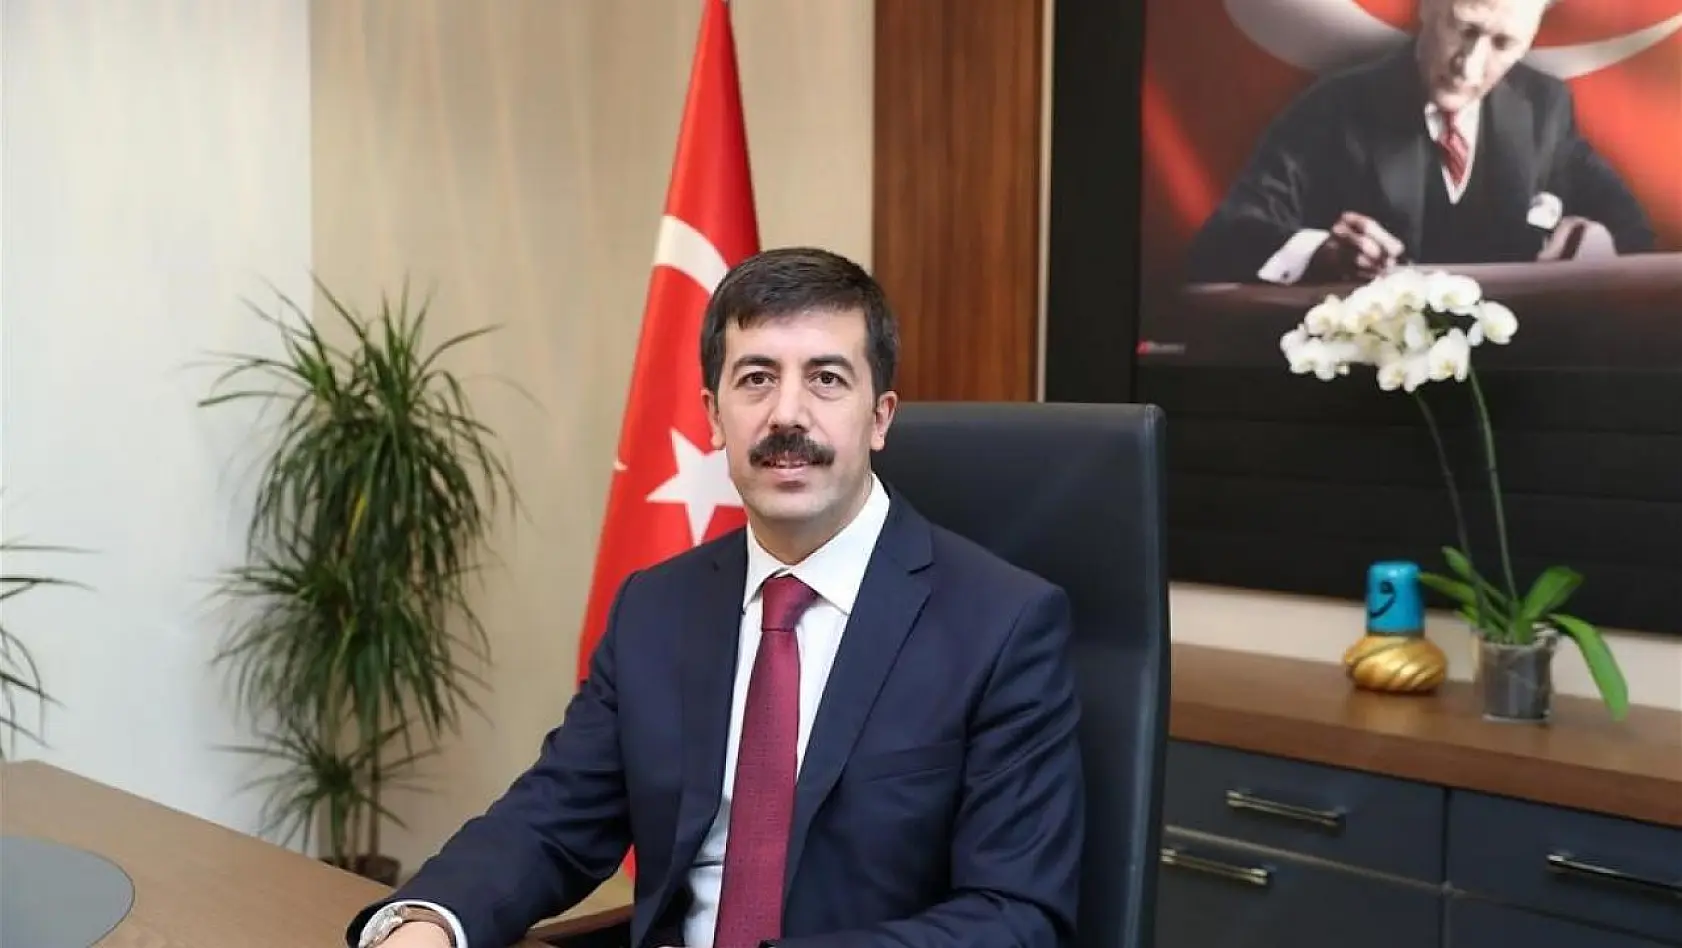 KSBÜ'nün yeni rektörü Prof. Dr. Ahmet Tekin oldu